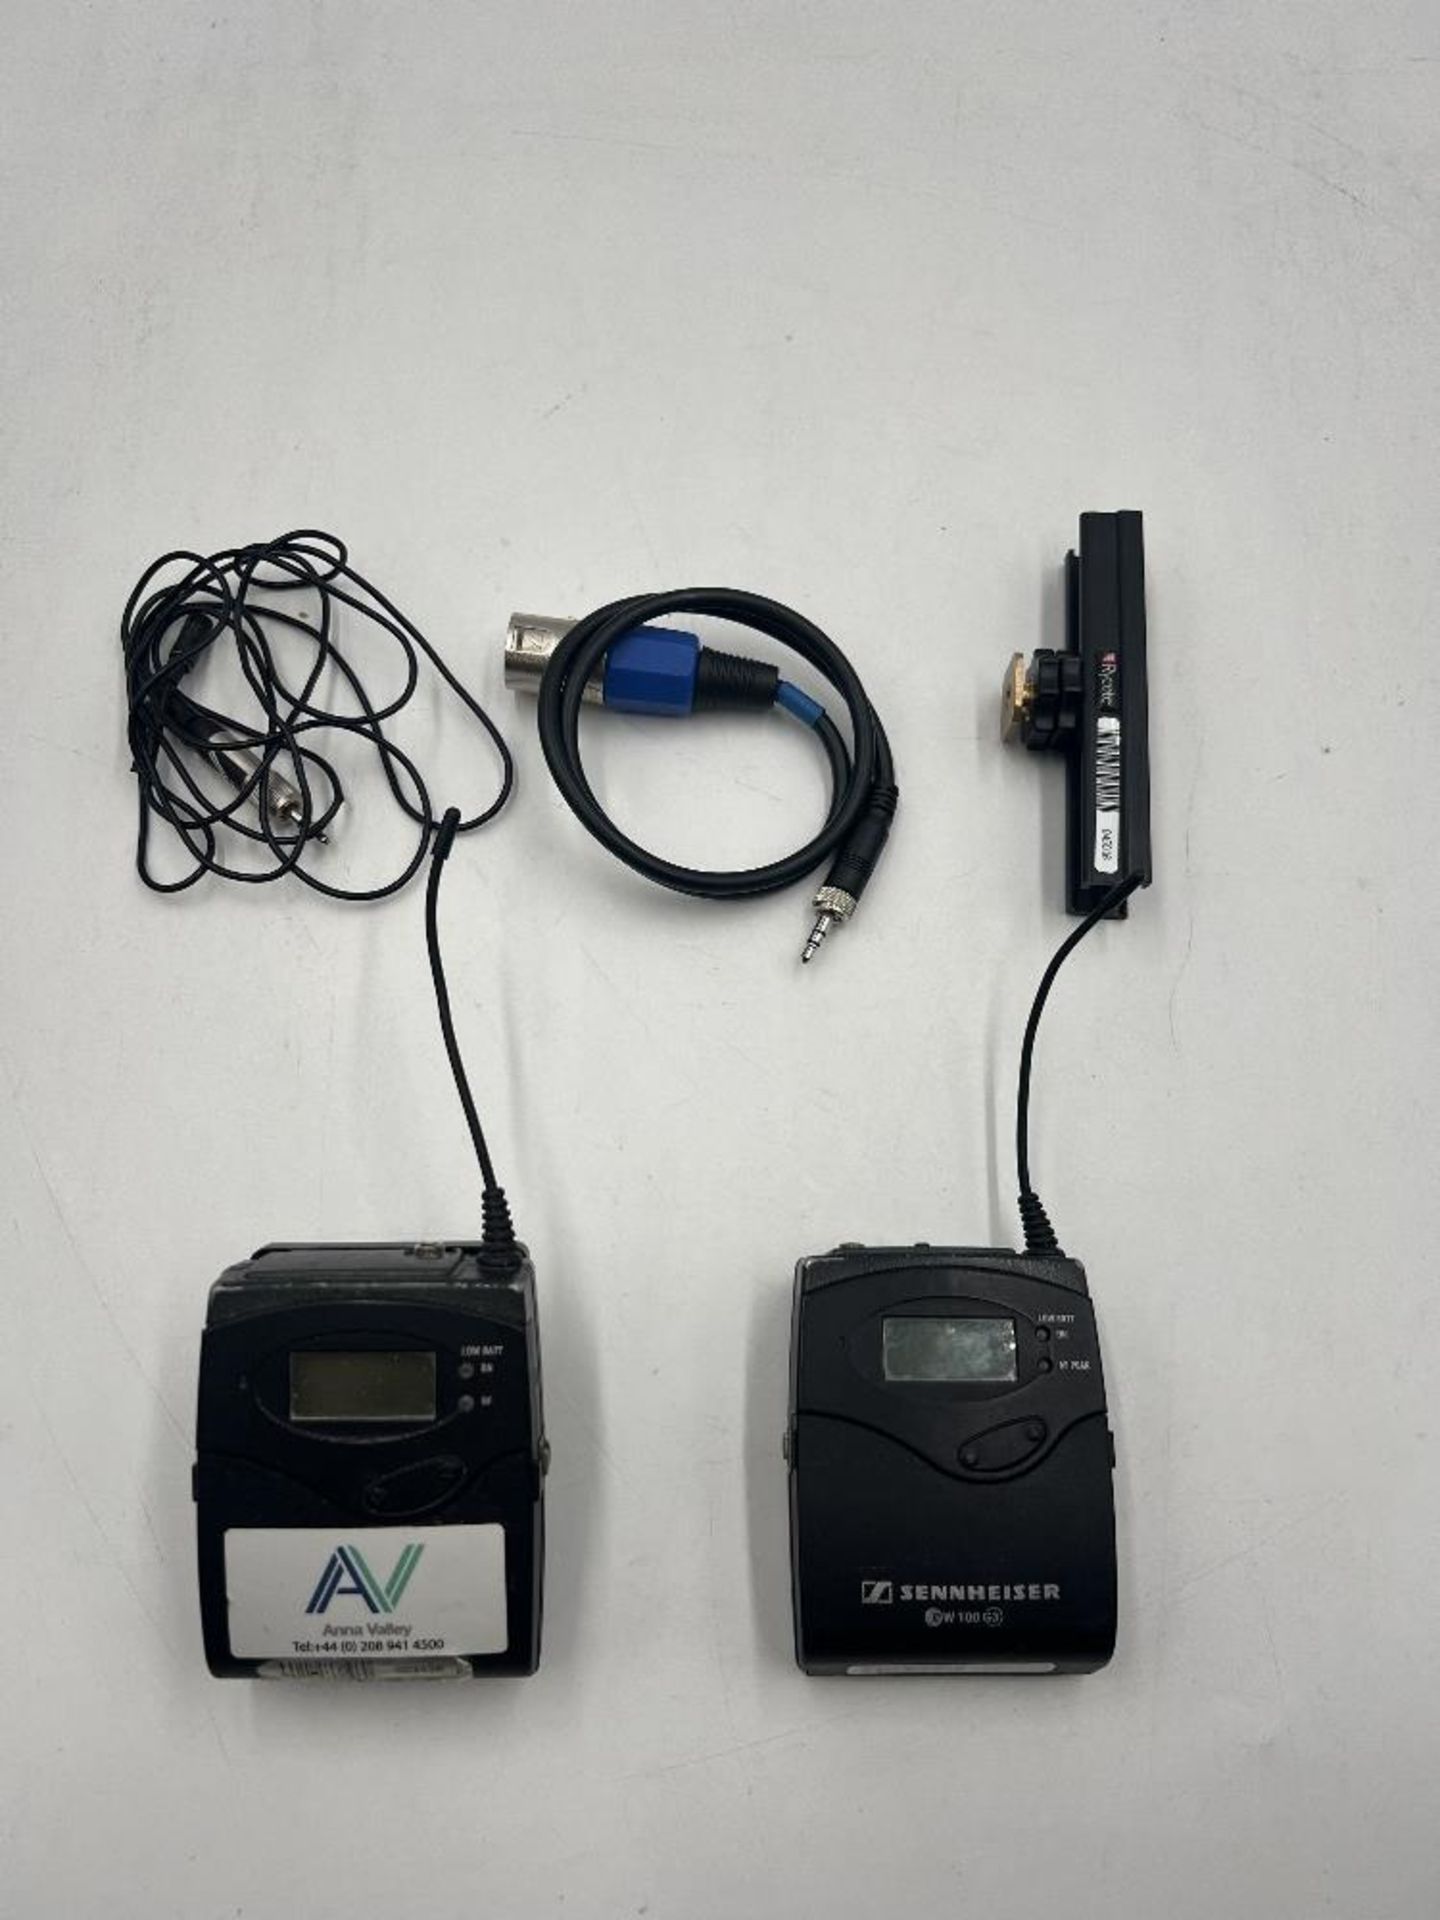 Sennheiser G3 EW100 Transmitter And Sennheiser G3 Receiver Kit